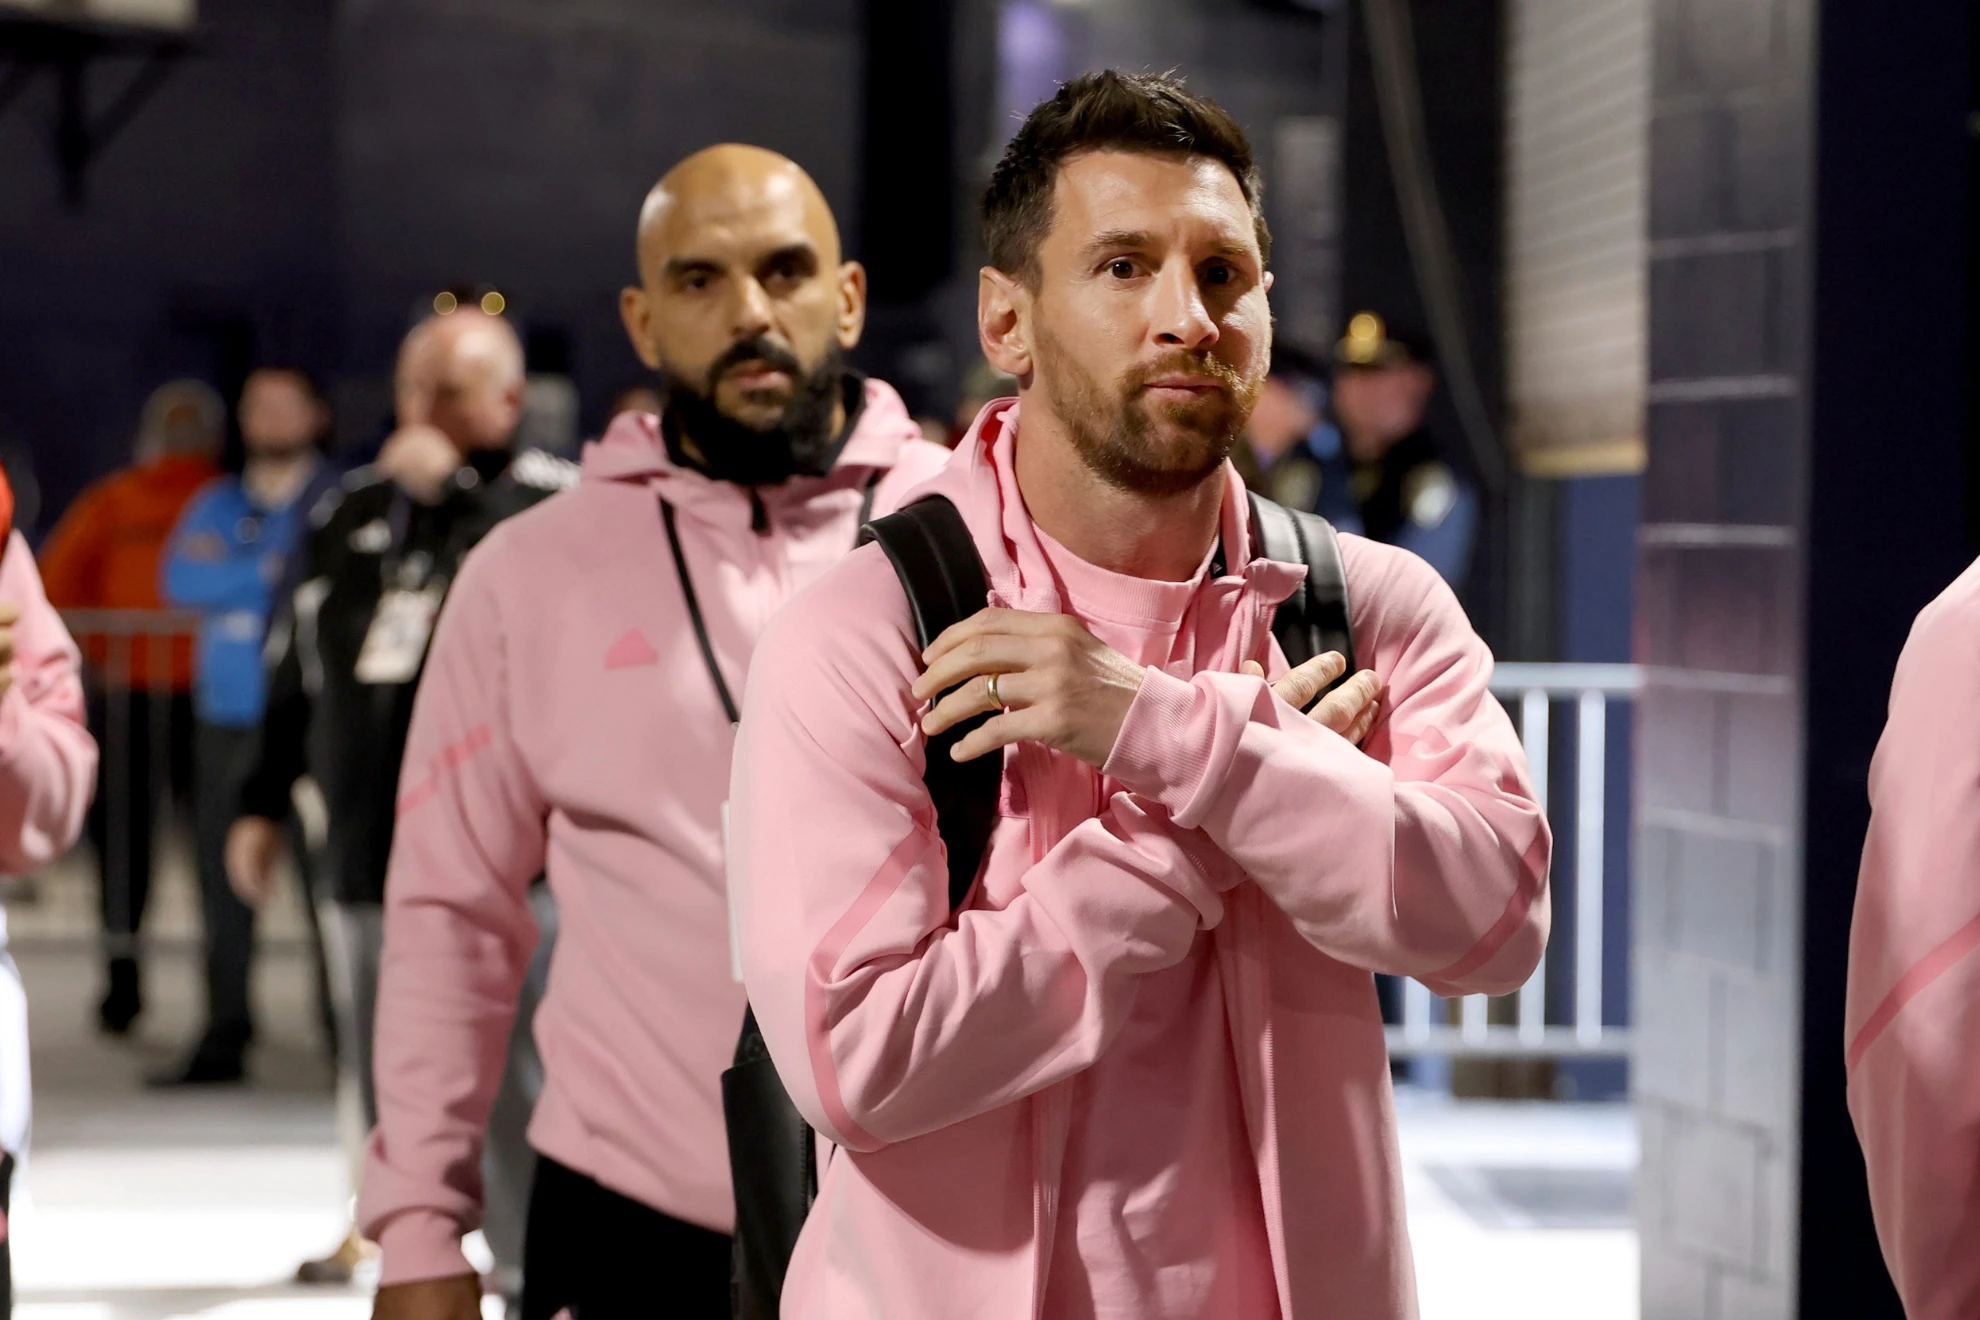 Vệ sĩ riêng làm điều gì, Messi phản ứng ra sao mà lại gây sốt mạng xã hội?